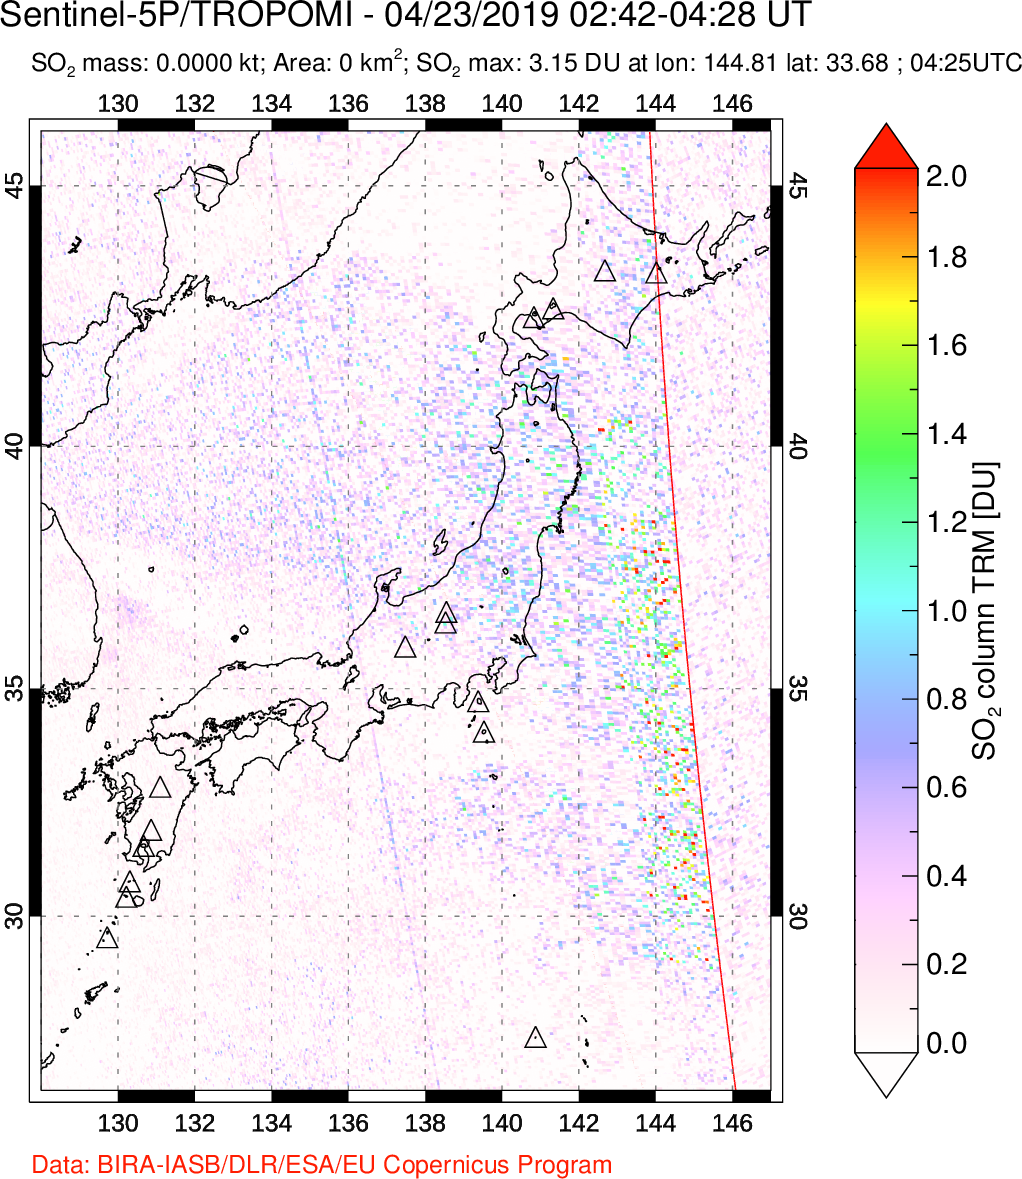 A sulfur dioxide image over Japan on Apr 23, 2019.